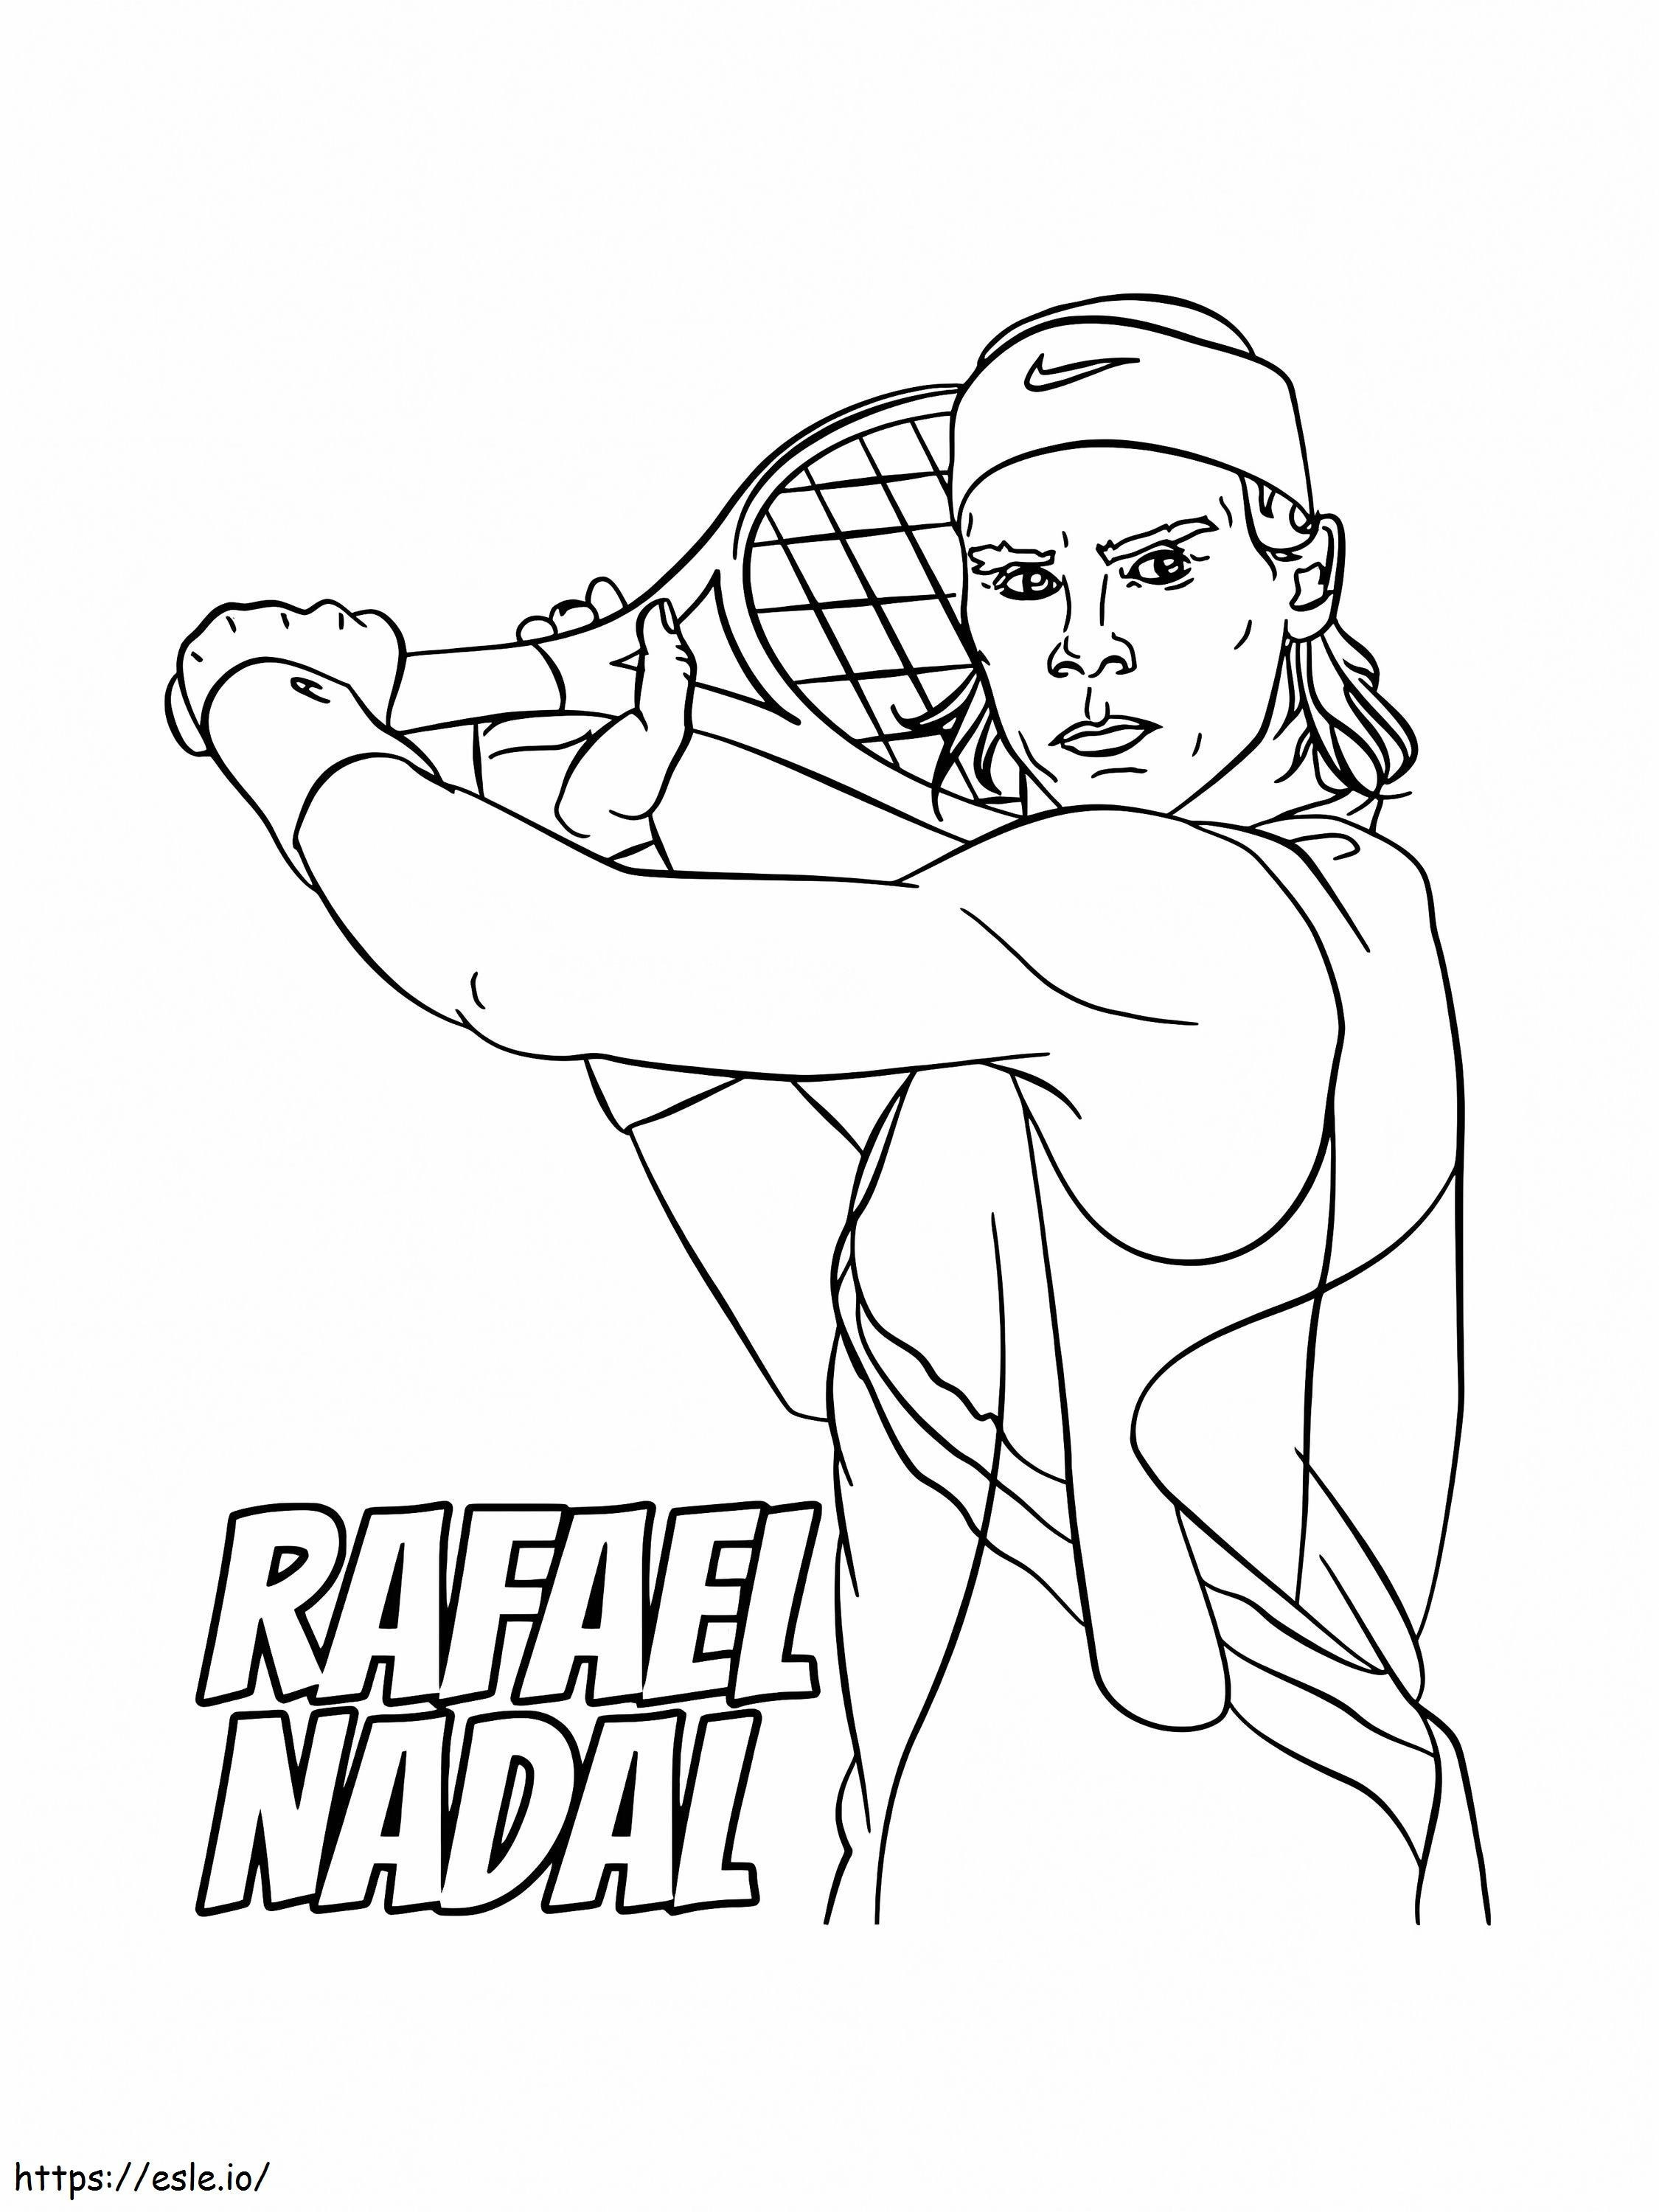 Rafael Nadal Playing Tennis coloring page